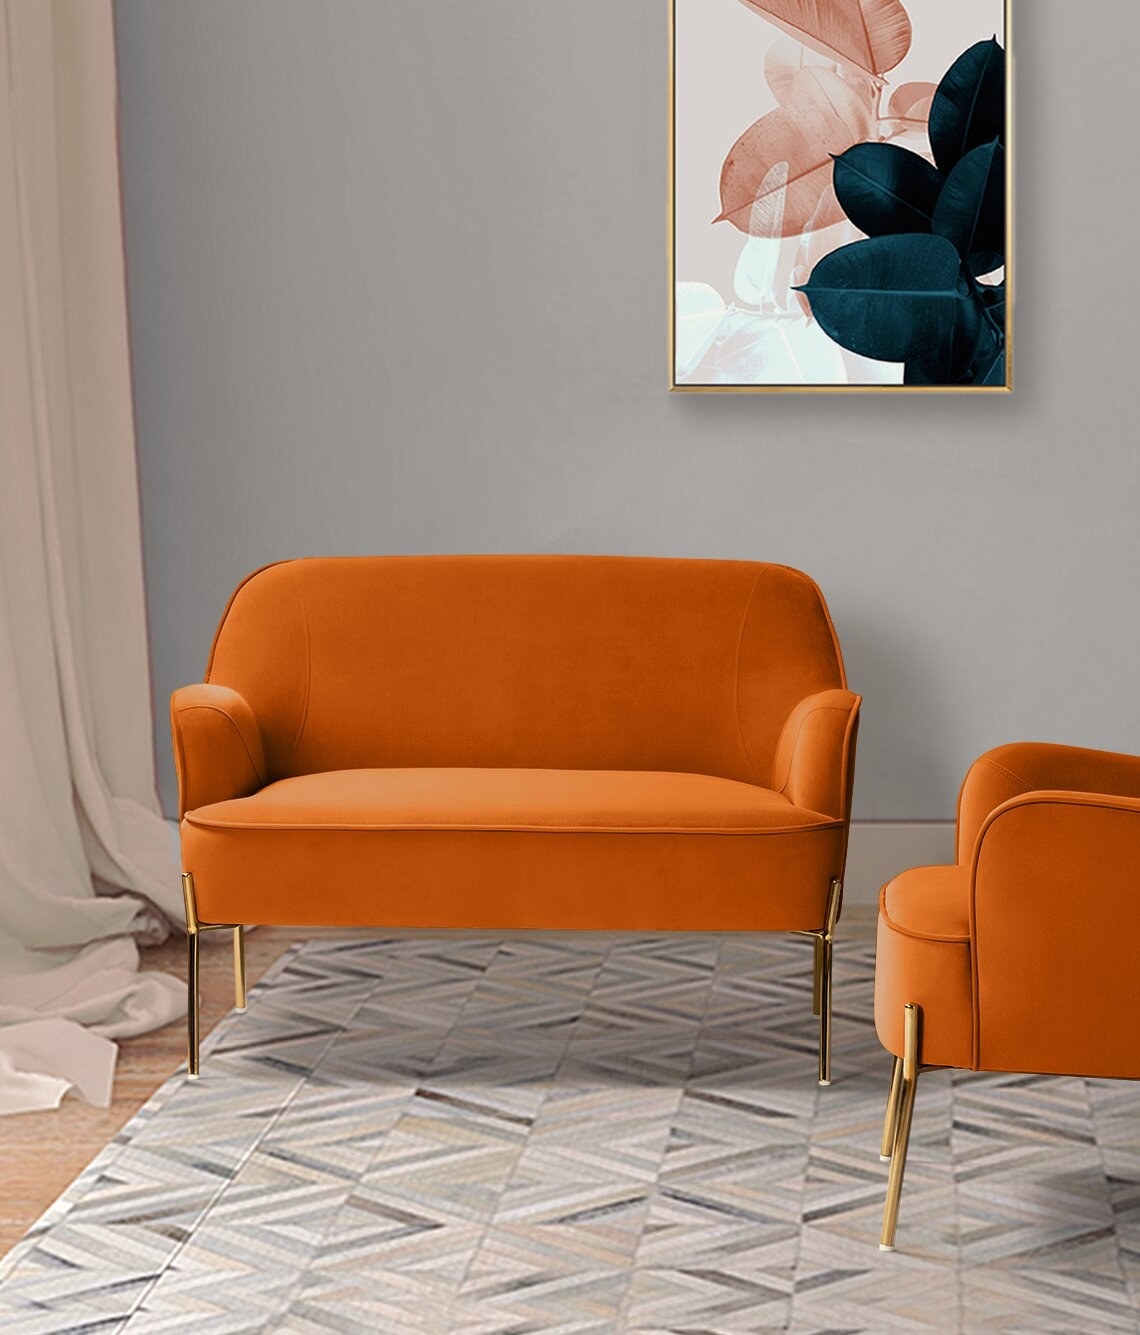 An orange velvet love seat in a living room.